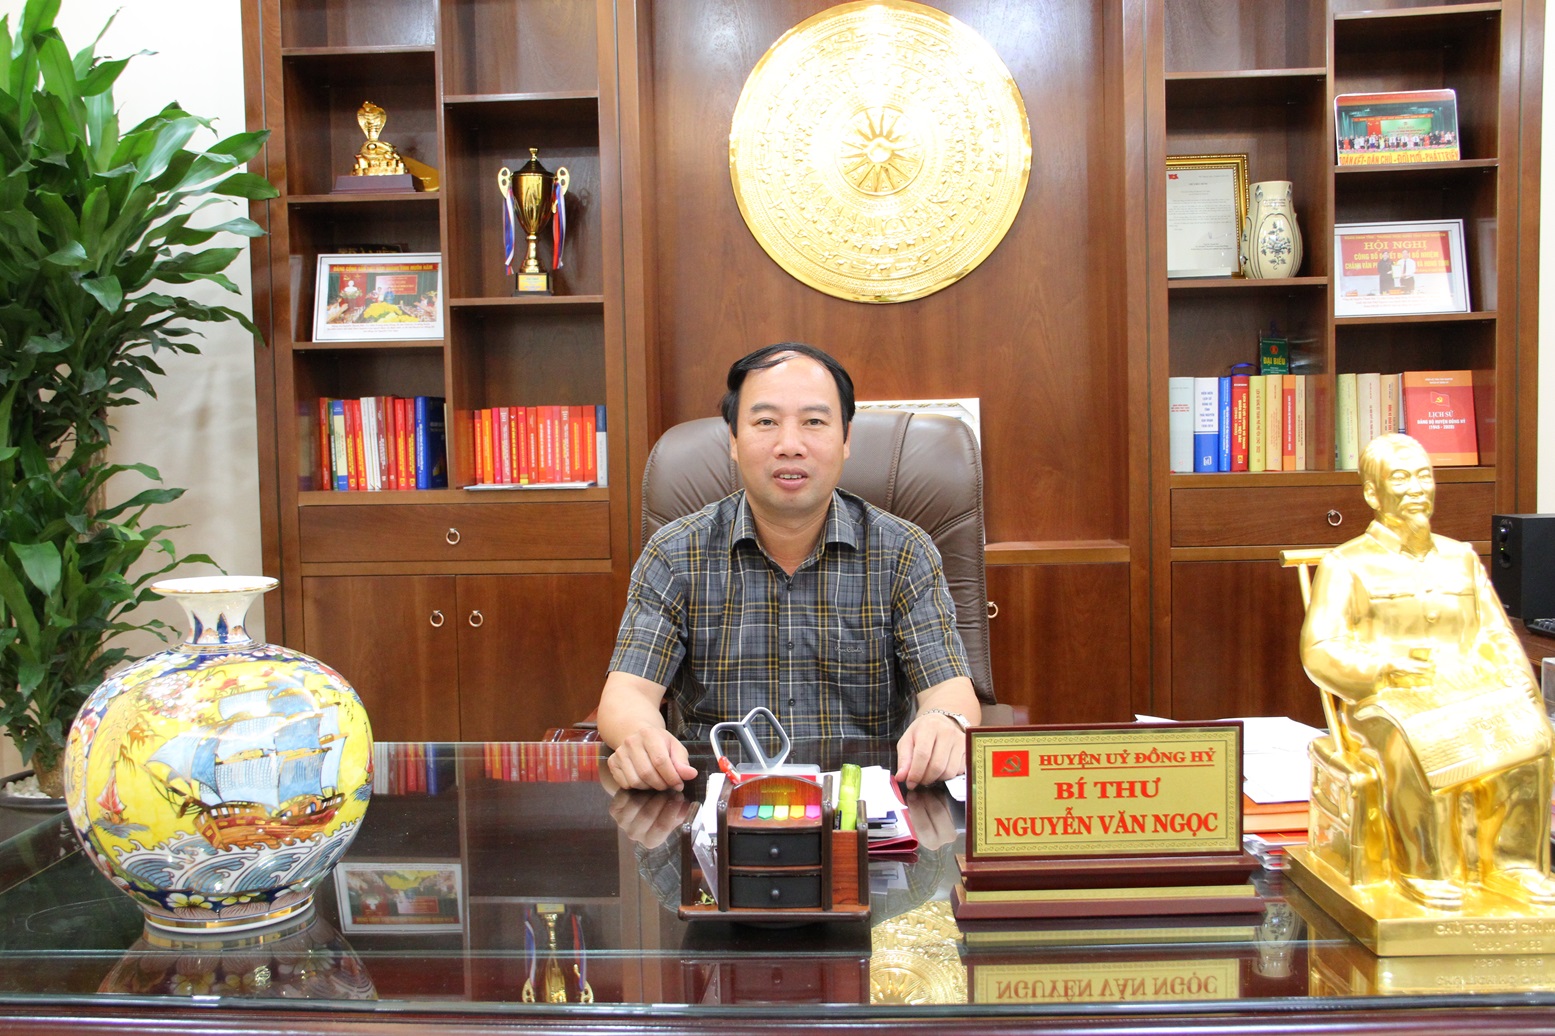 Theo Bí thư Huyện ủy Đồng Hỷ - Nguyễn Văn Ngọc, các sản phẩm OCOP đang góp phần thúc đẩy kinh tế địa phương phát triển. Ảnh: Vũ Phường